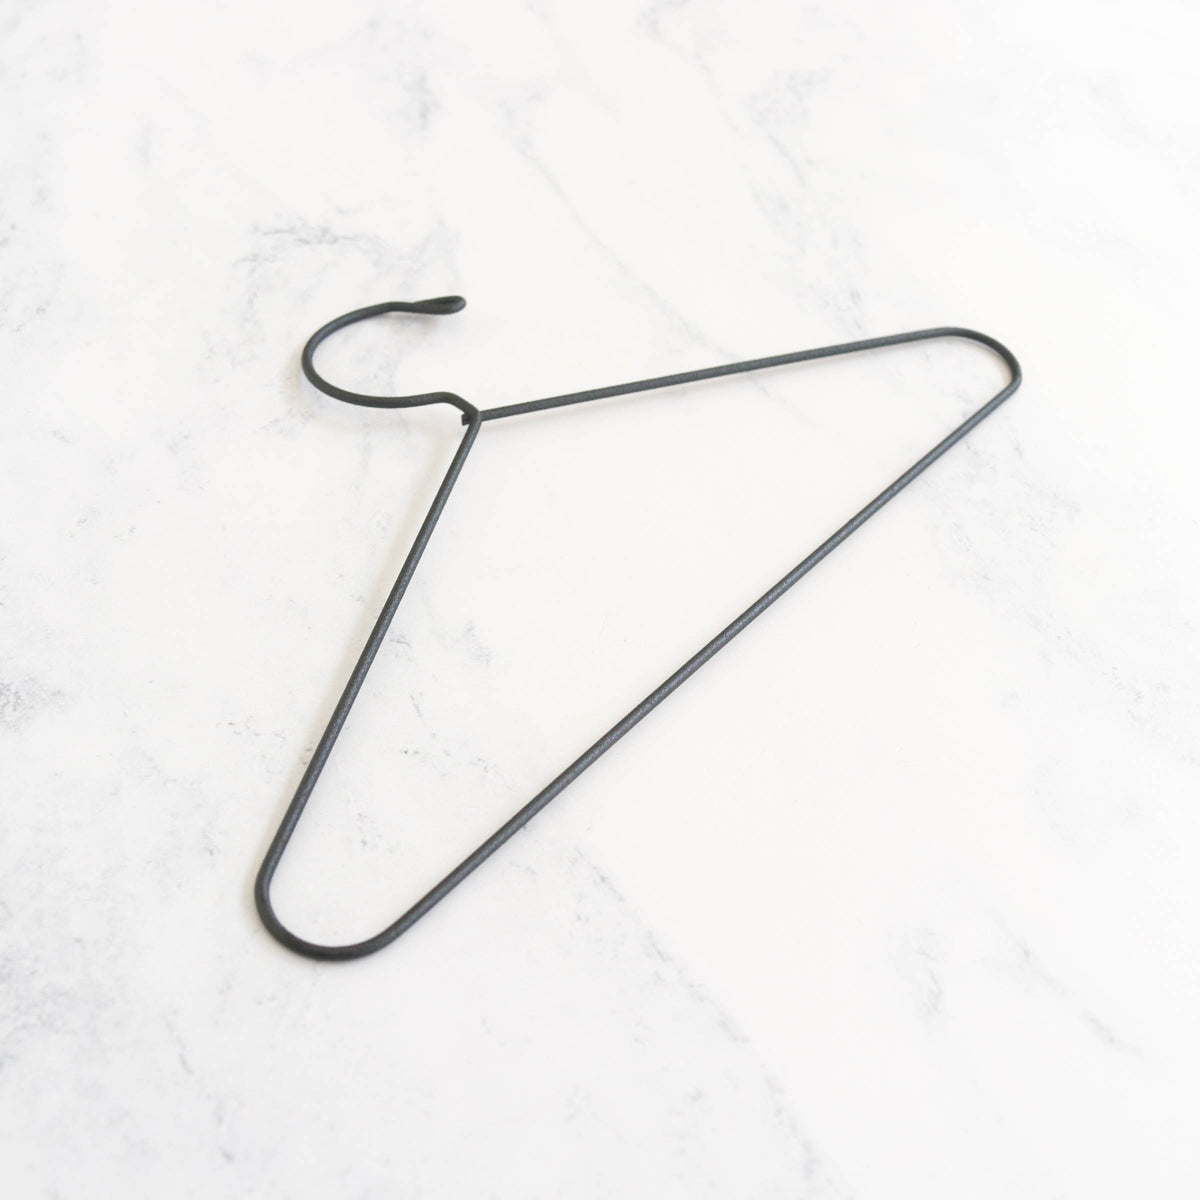 Metal Needlework Hanger with Hook Top